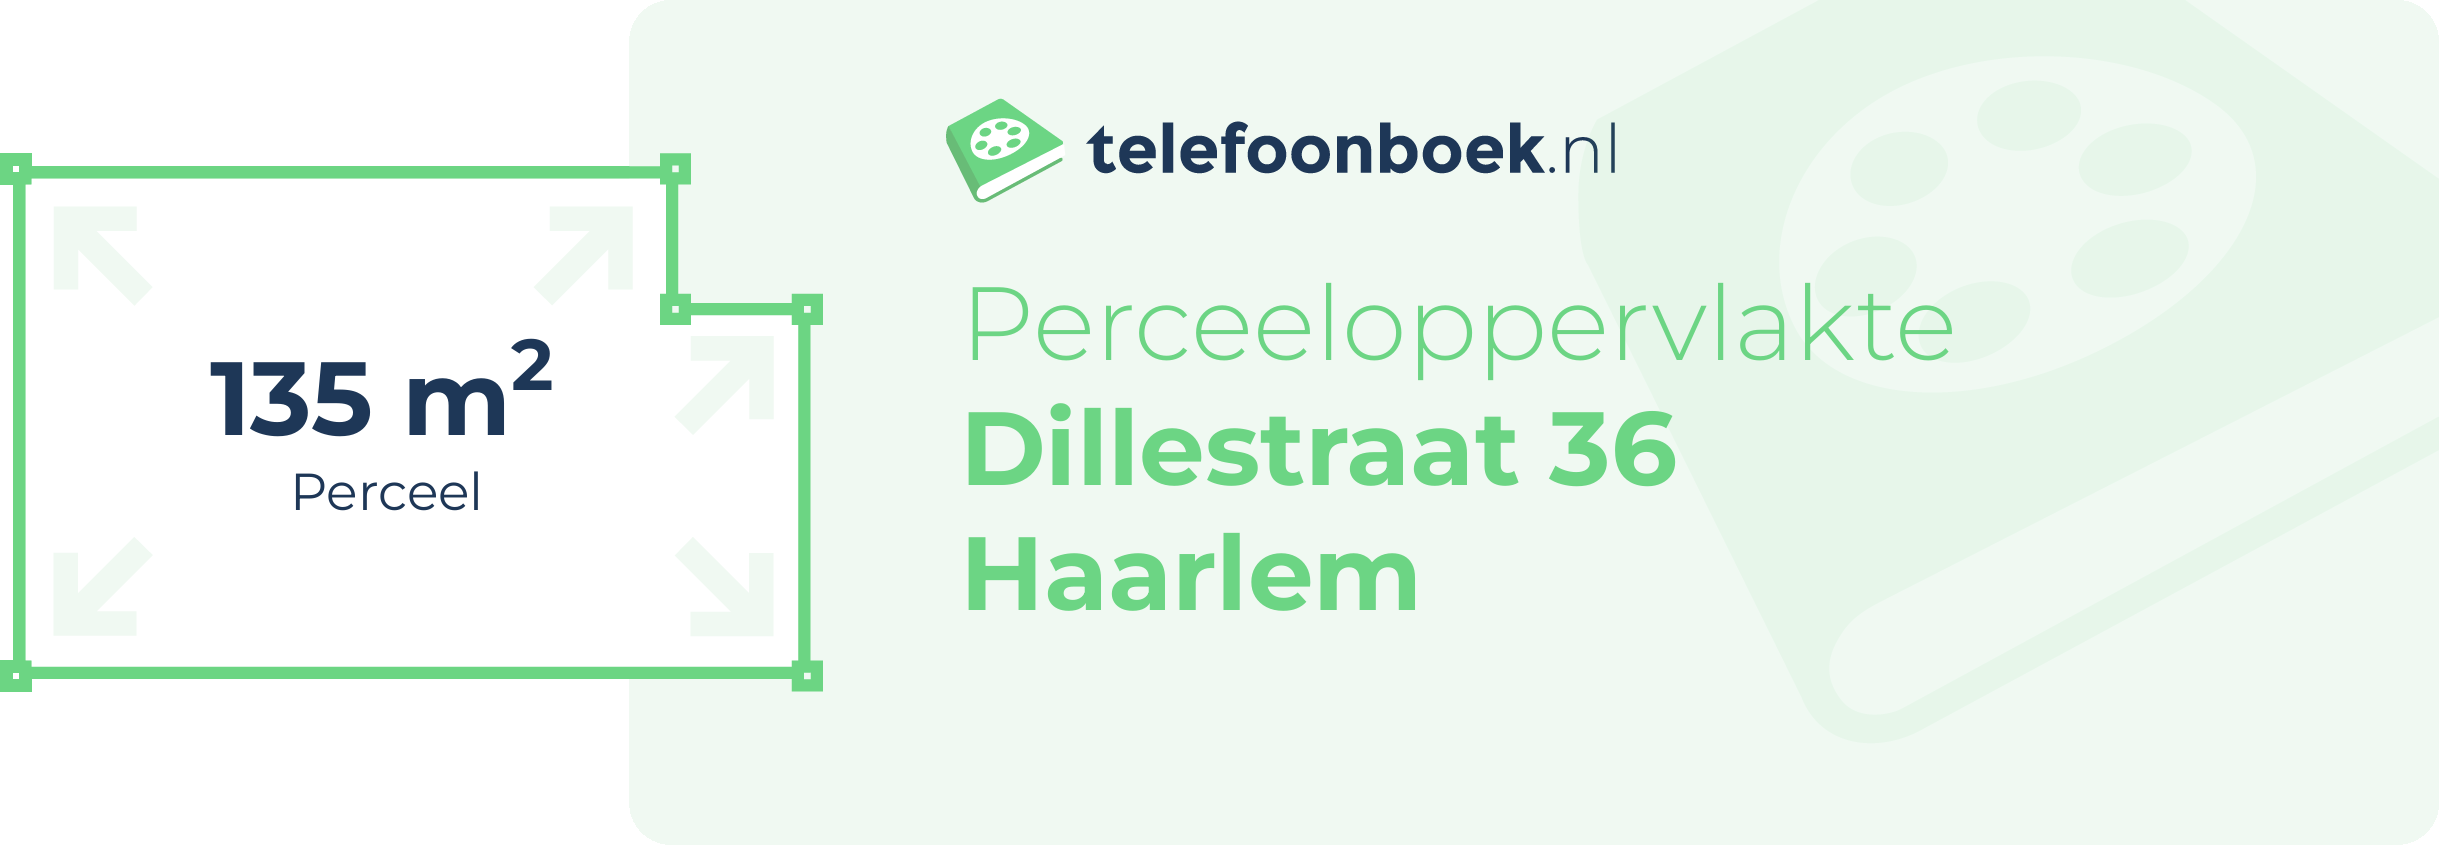 Perceeloppervlakte Dillestraat 36 Haarlem